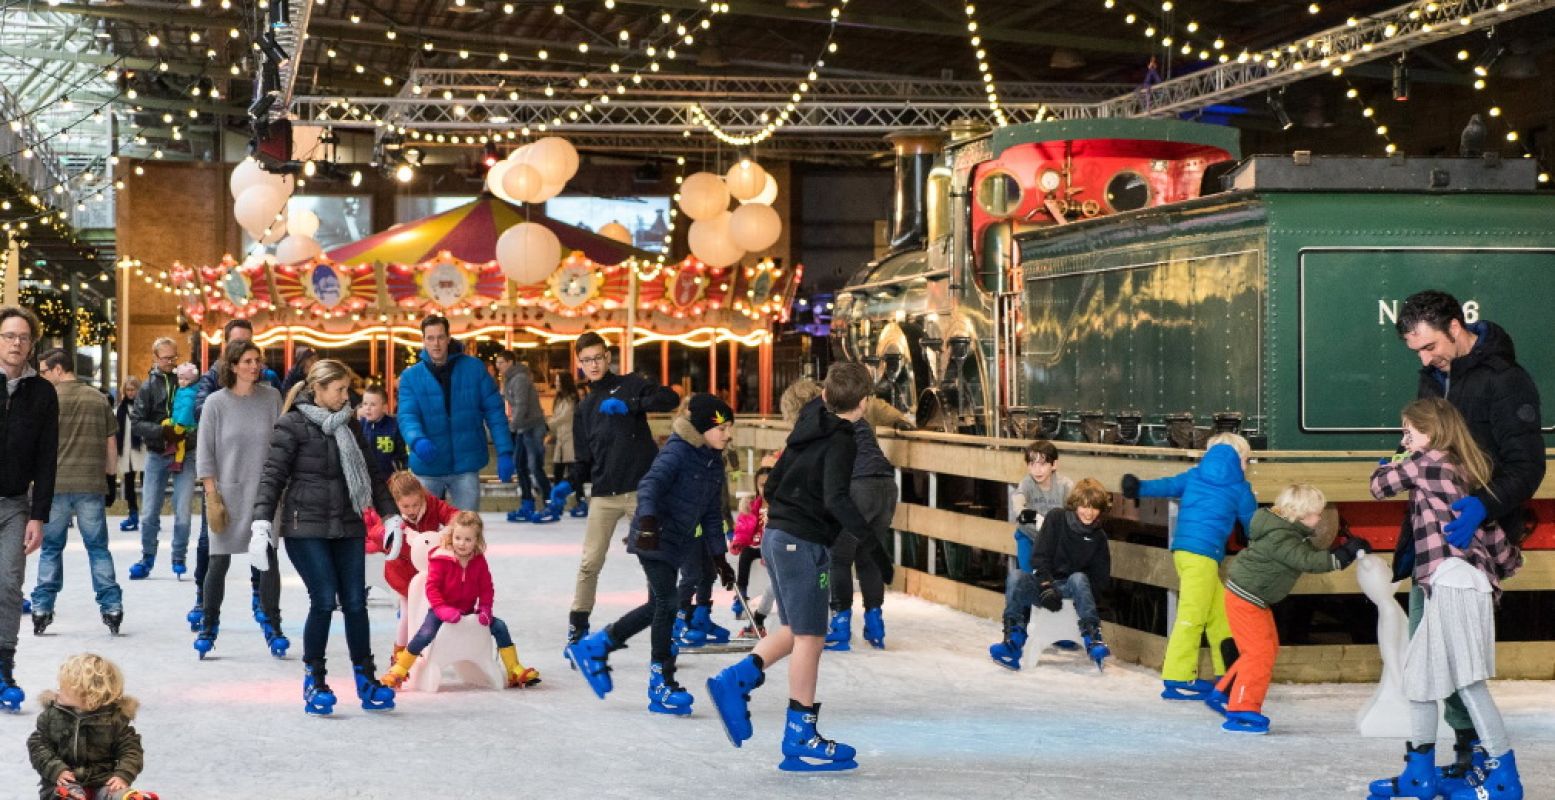 Geniet in de kerstvakantie van winterse gezelligheid in Het Spoorwegmuseum, met als hoogtepunt de schaatsbaan. Foto: Het Spoorwegmuseum